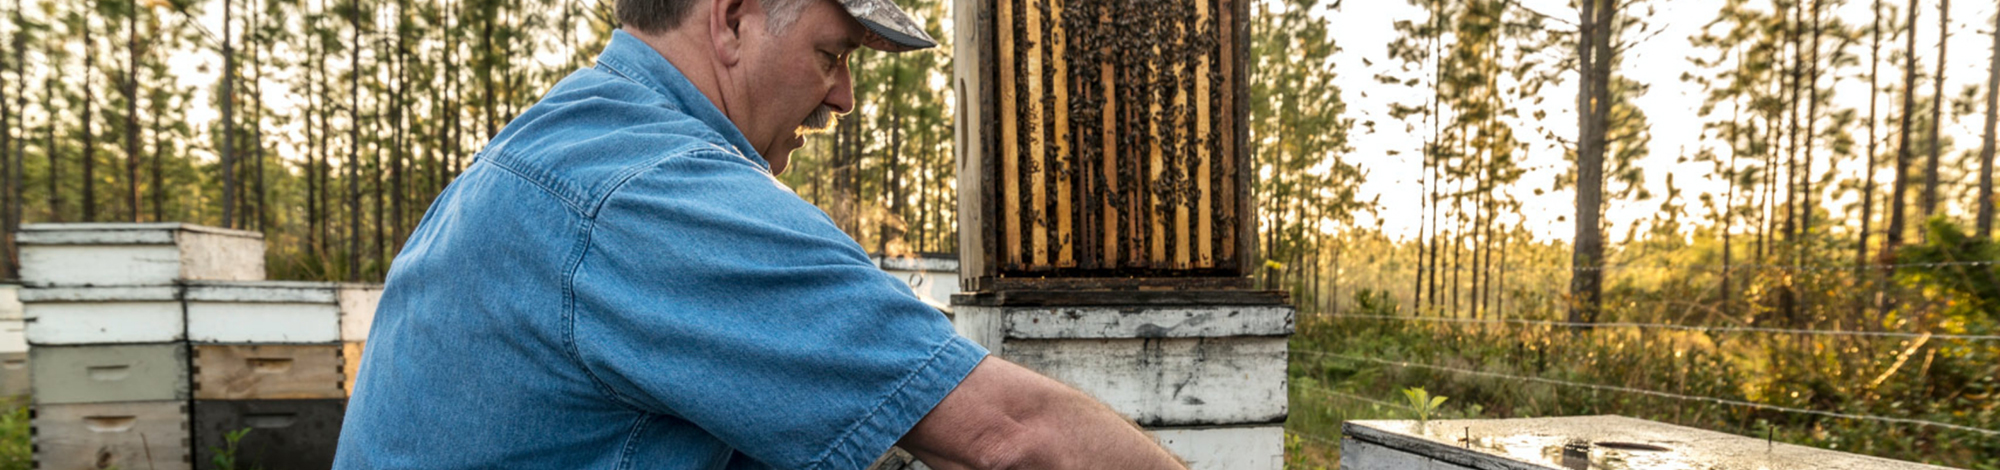 Beekeeper handling apiaries